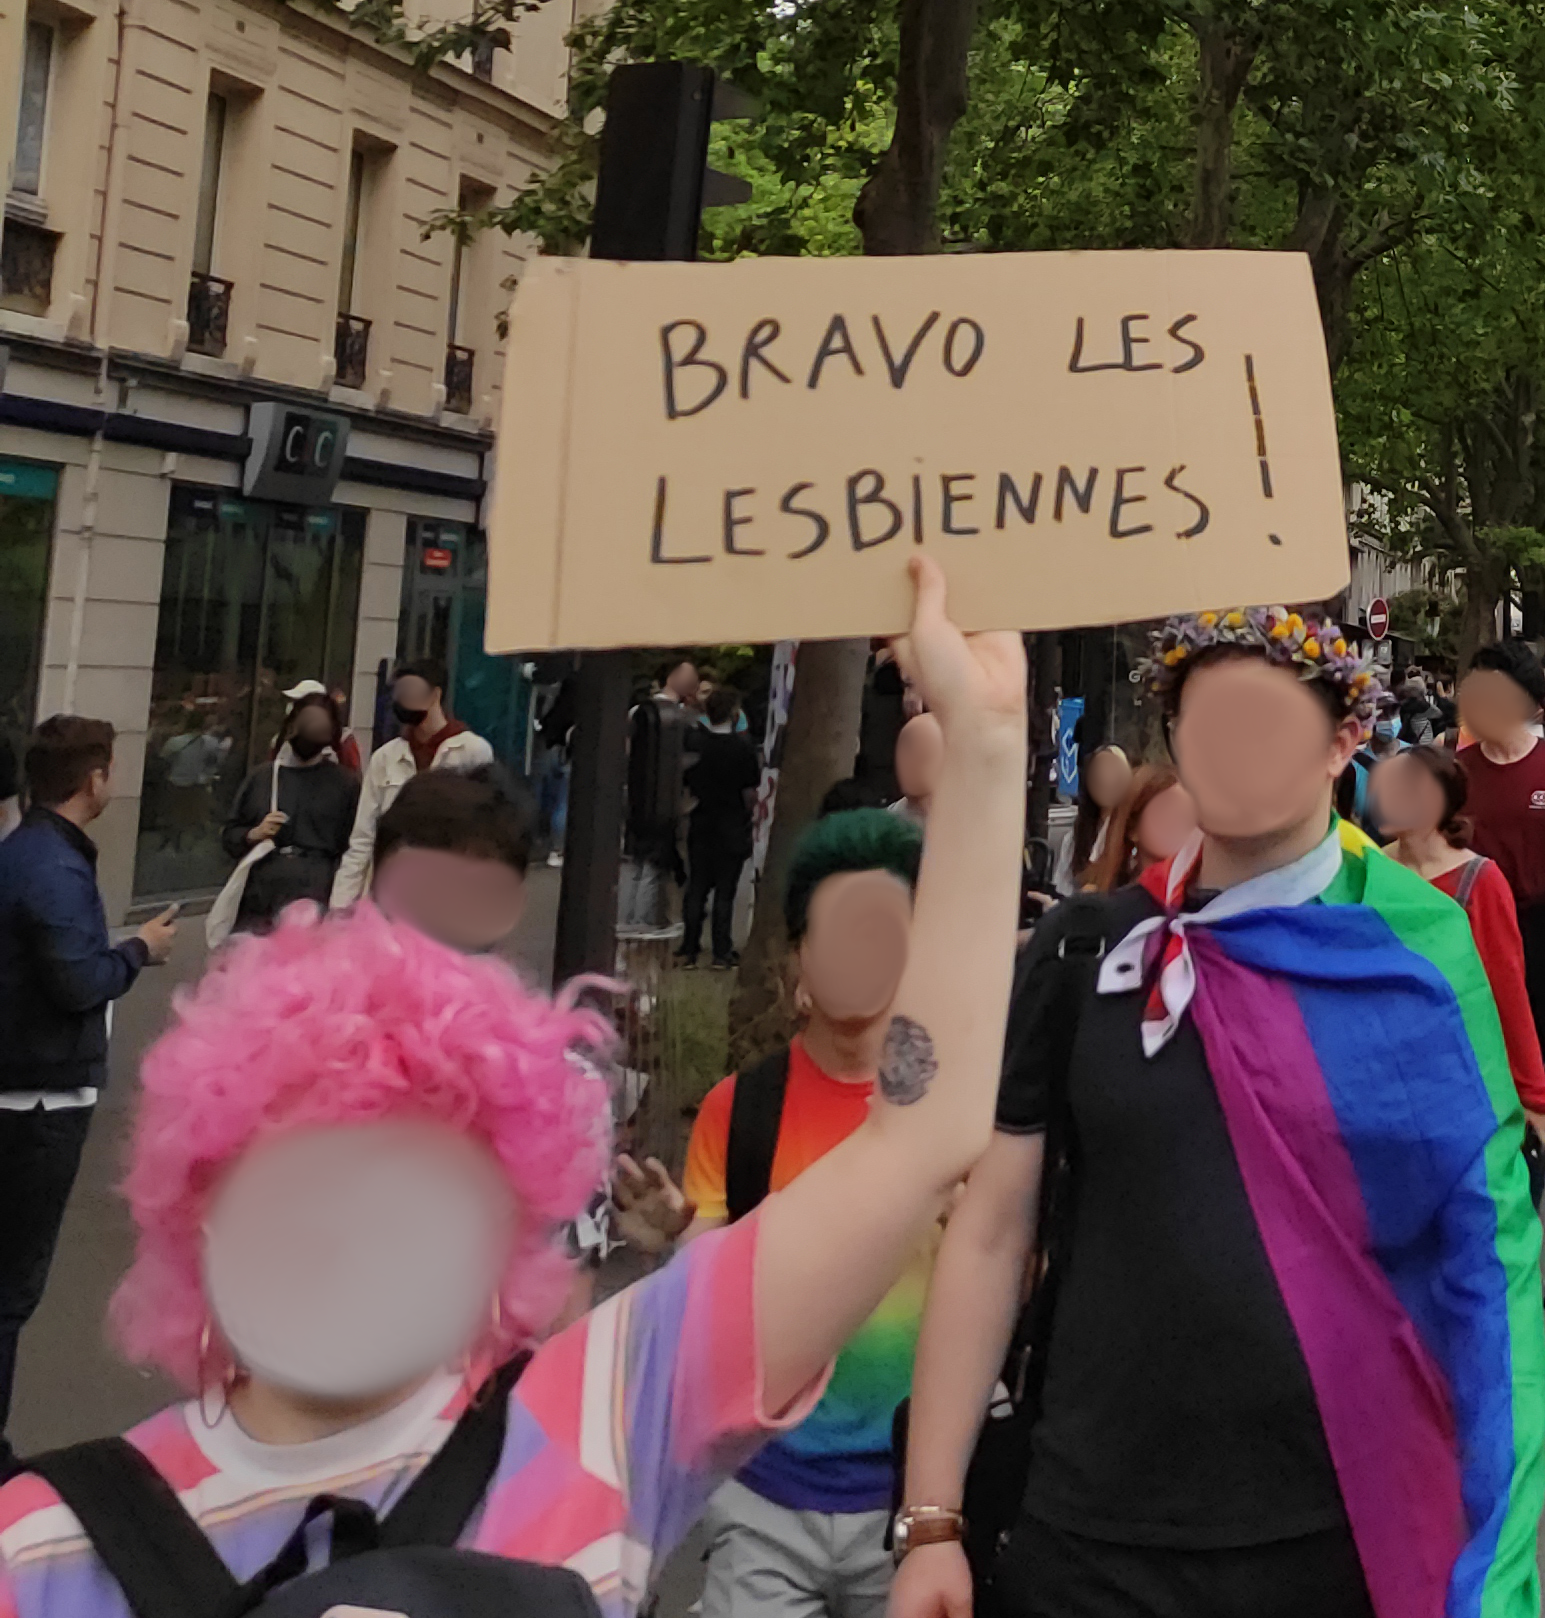 Bravo les lesbienne